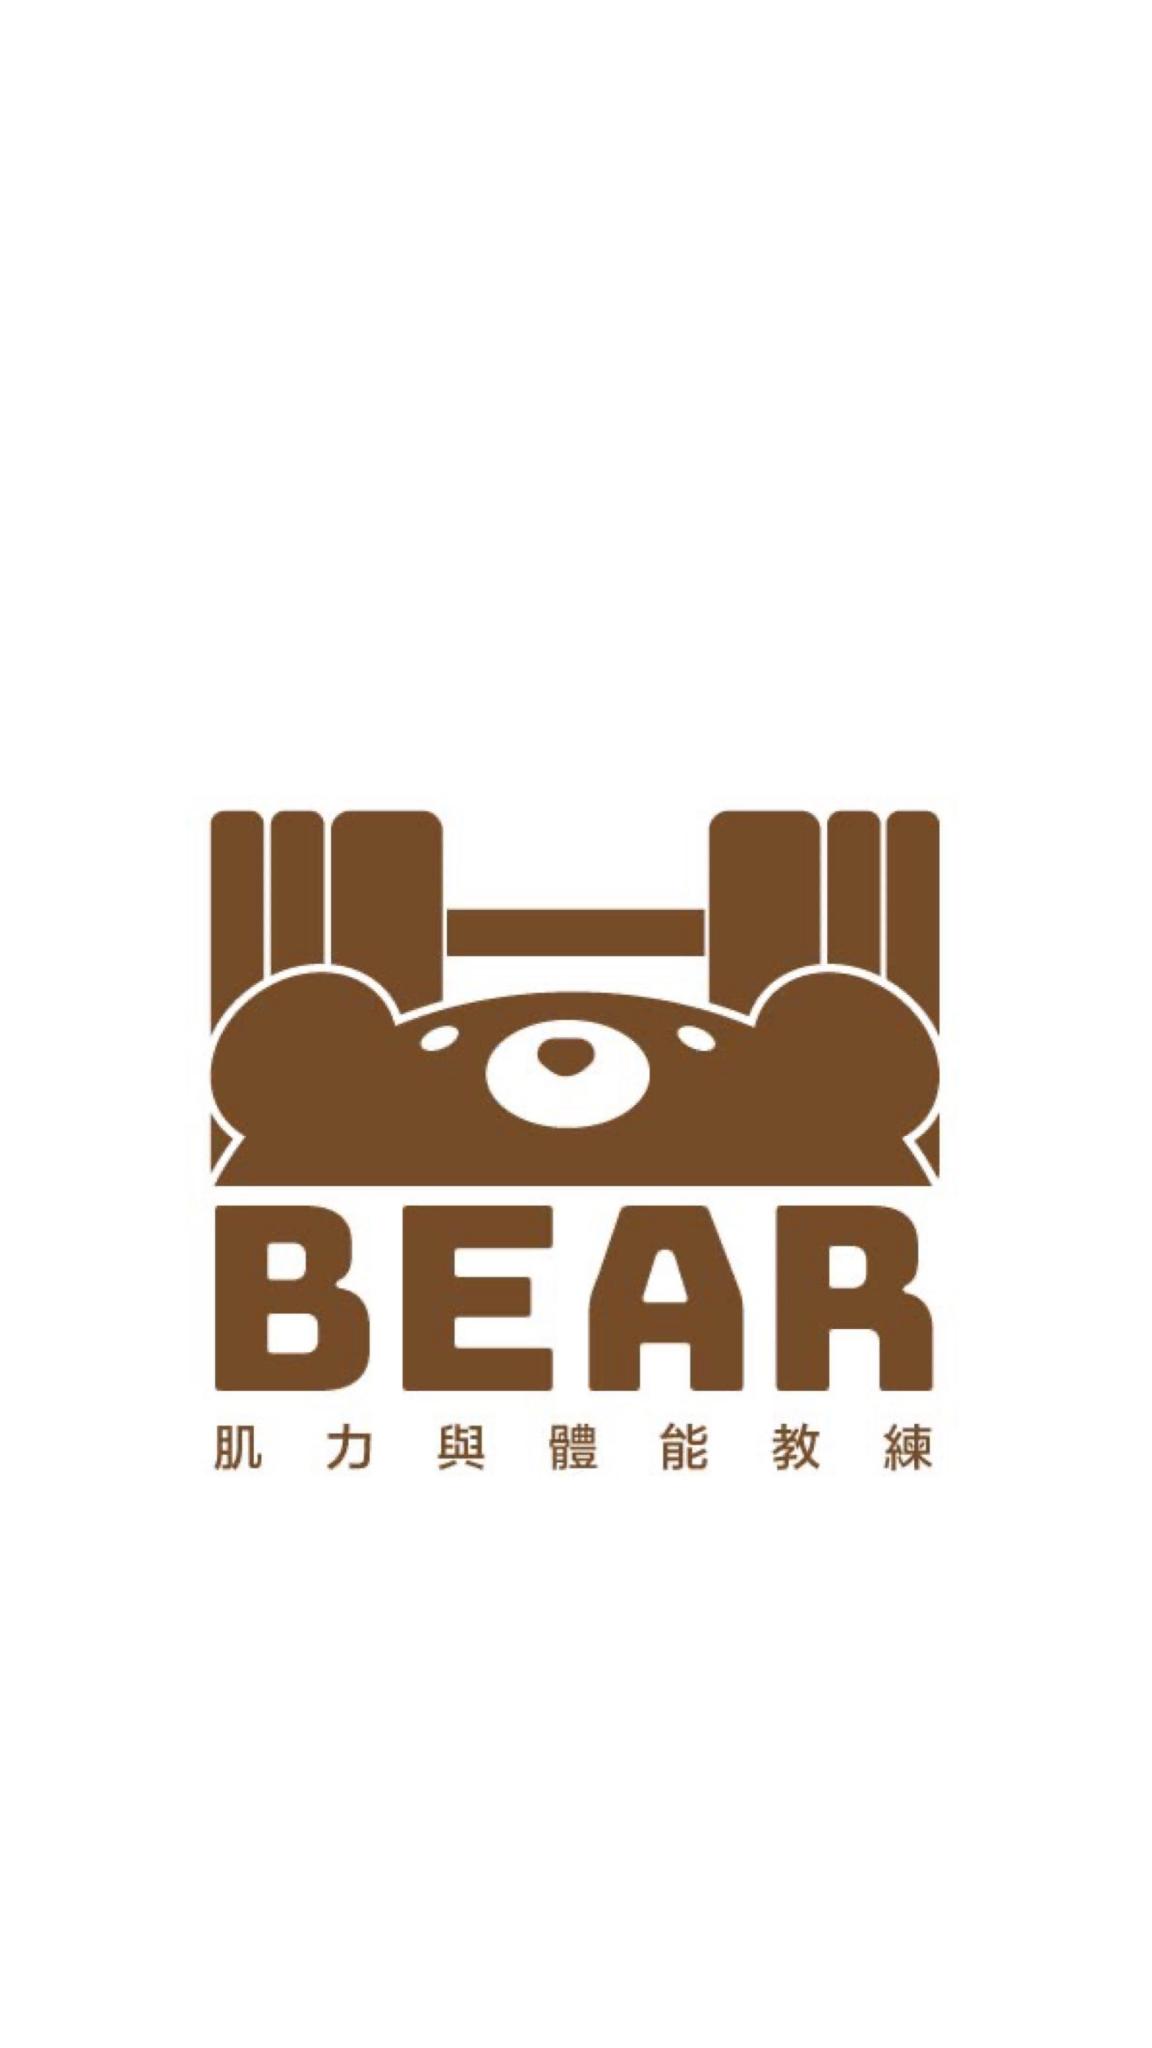 一對一肌力與體能訓練課程 - 語宸Bear